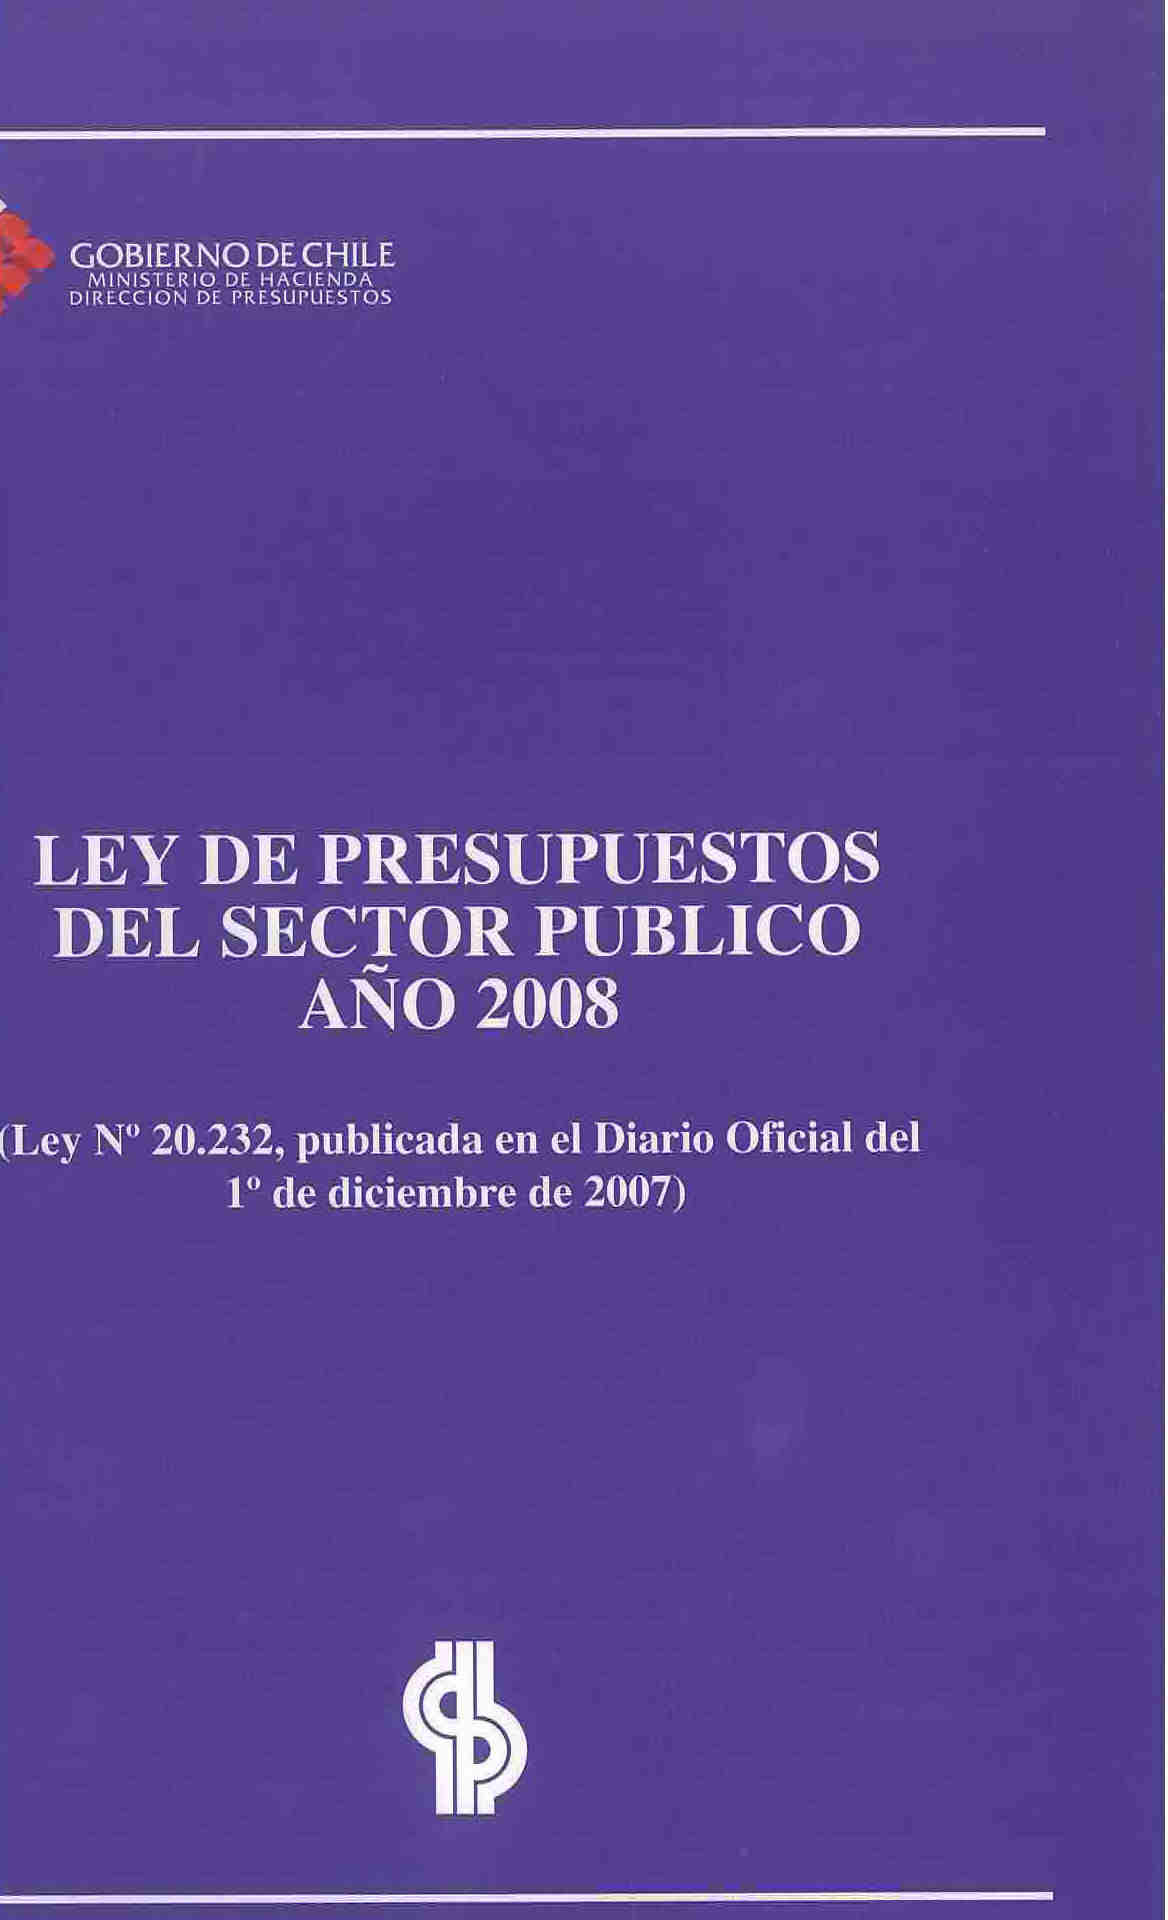 Ley de presupuestos del sector público año 2008. Ley N° 20.232. Publicada en el diario oficial de 1 de diciembre de 2007